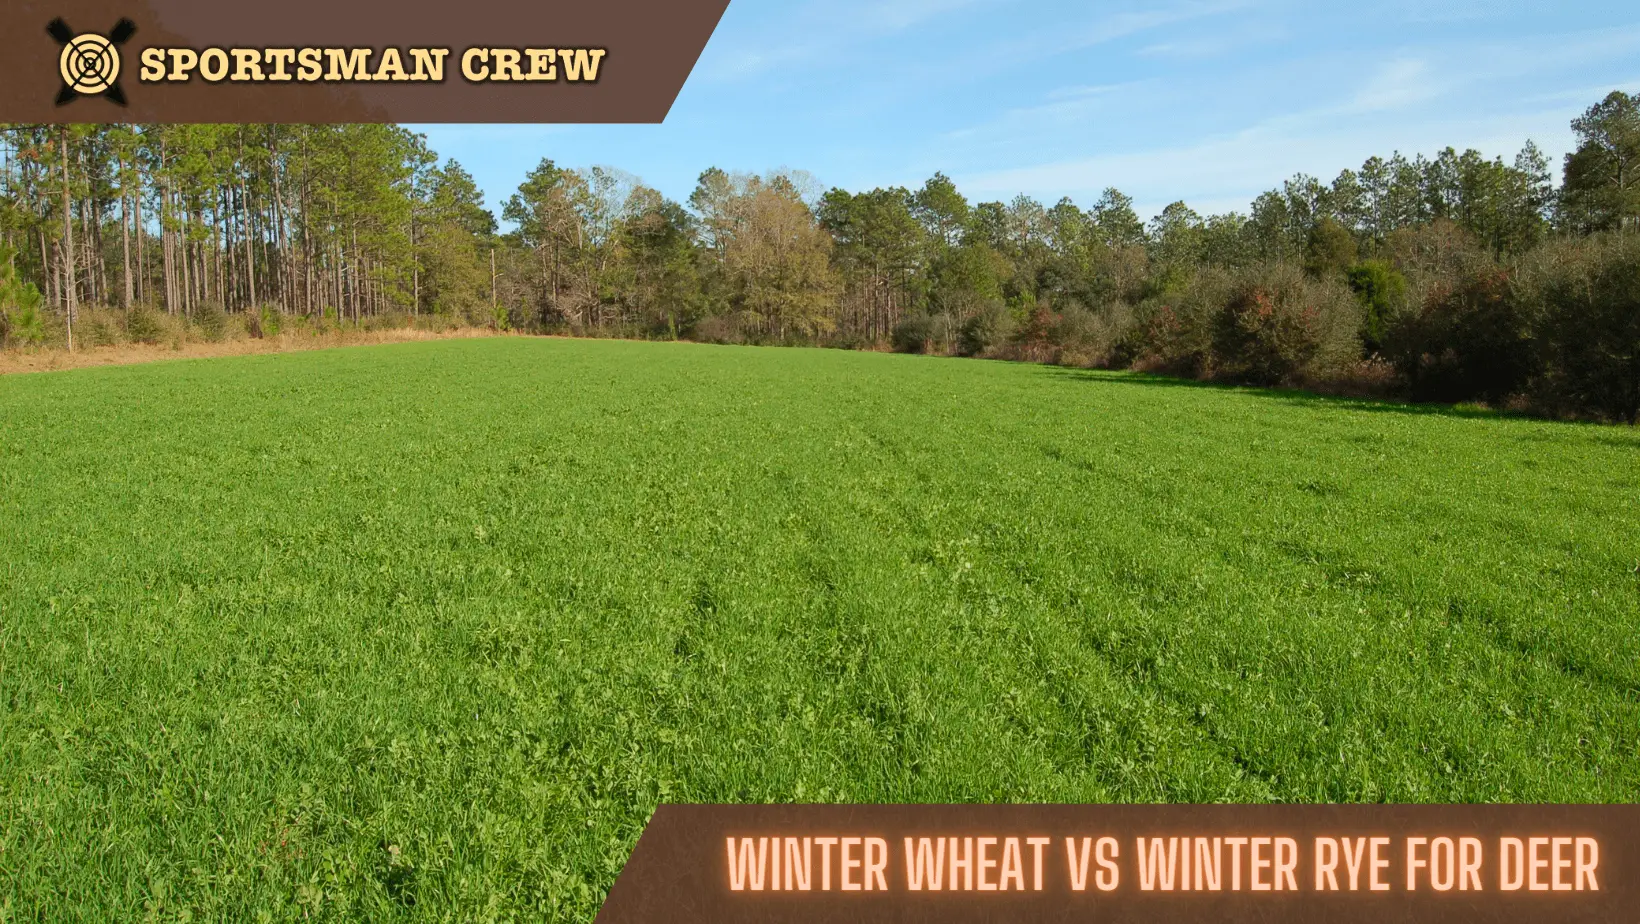 Winter Wheat vs Winter Rye for deer